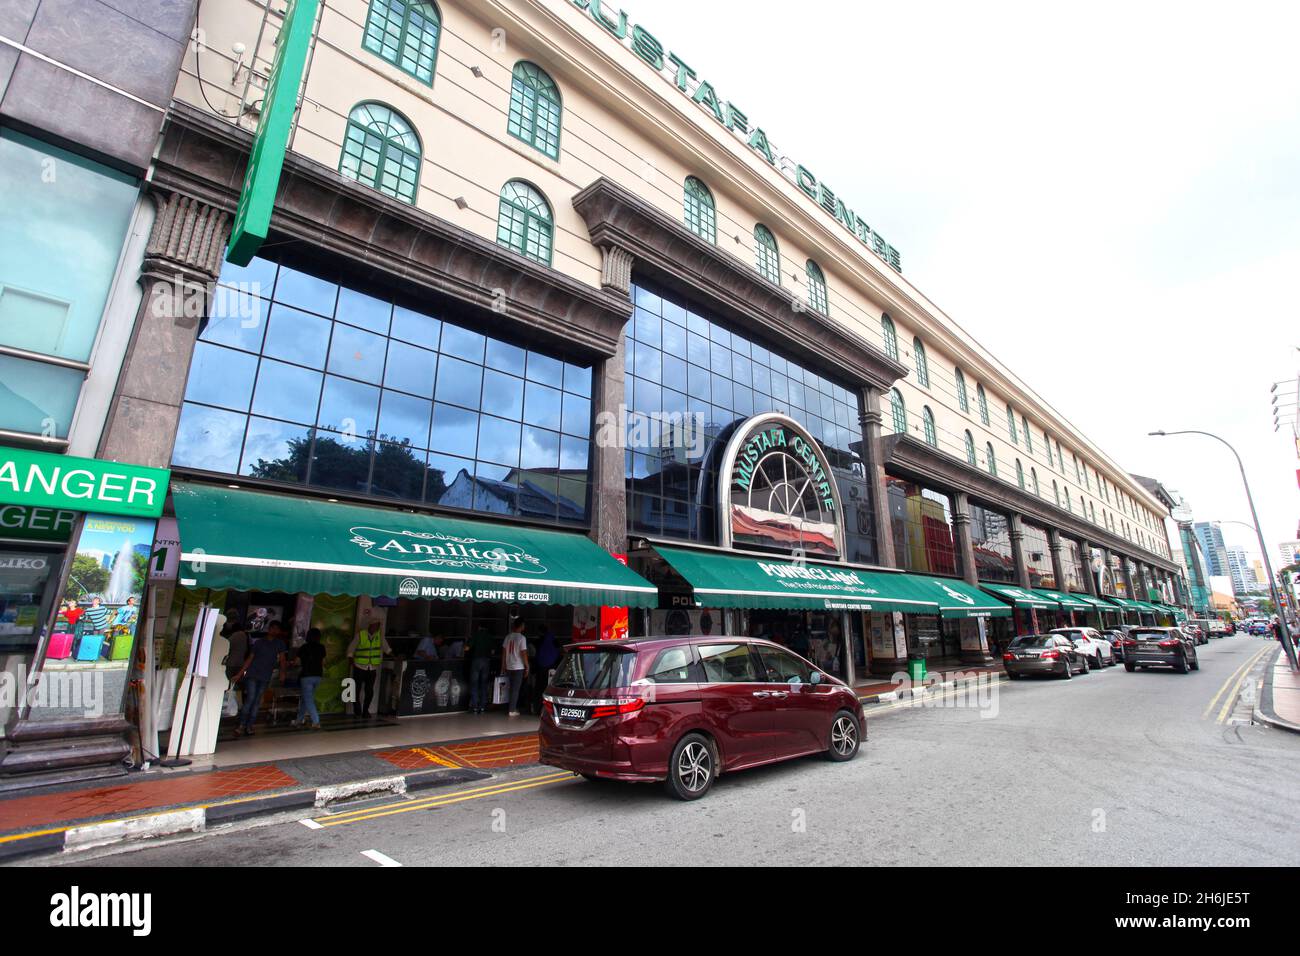 Mustafa Center, sur Syed Alwi Road à Little India, l'un des centres commerciaux de Singapour ouverts 24 heures sur 24, avec des voitures garées devant vous. Banque D'Images